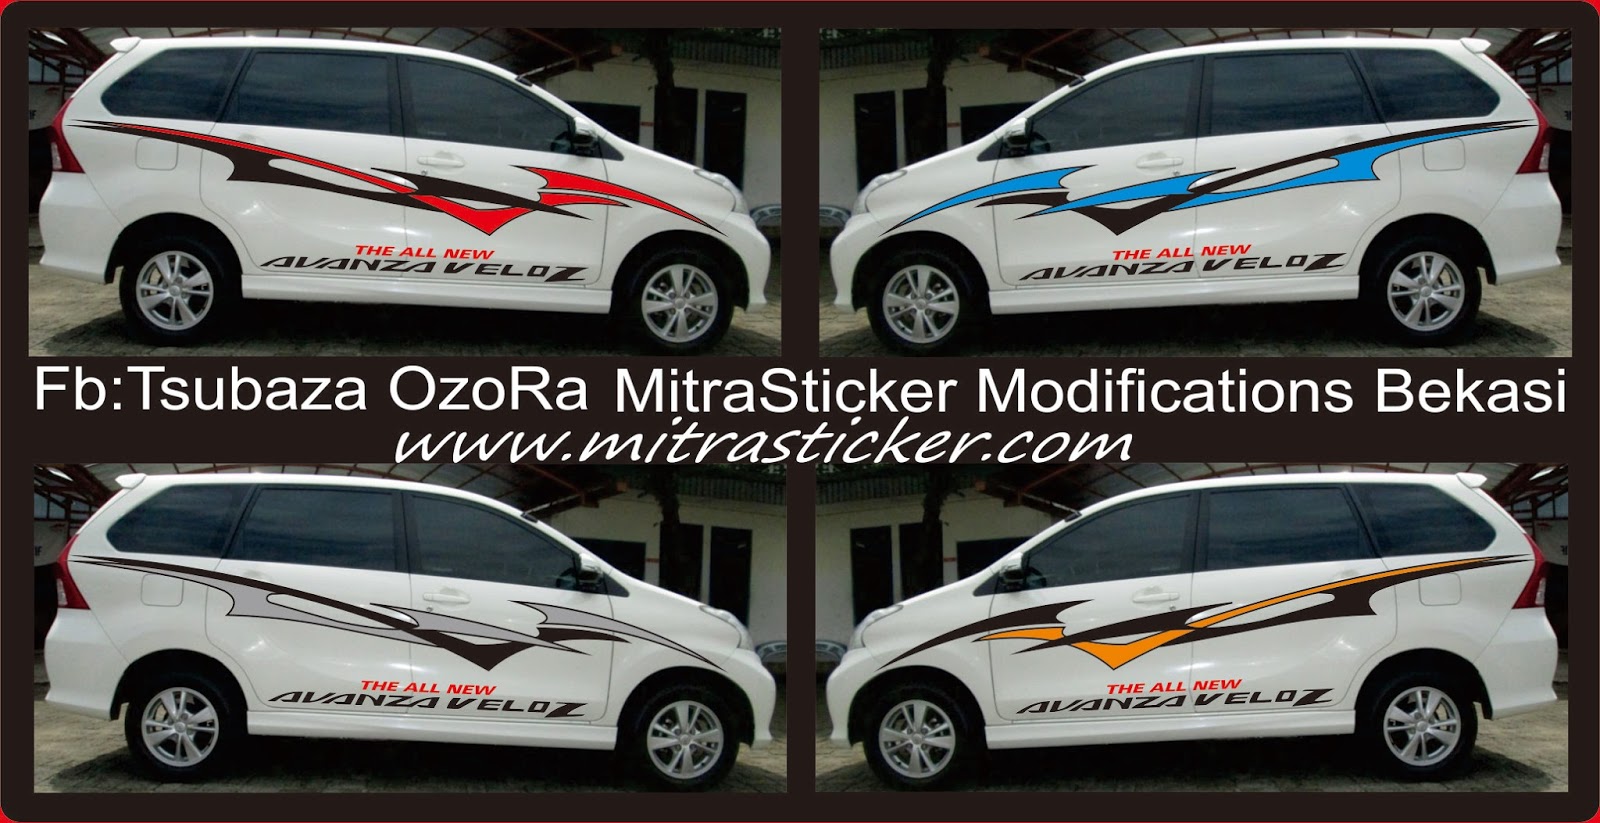 Gambar Modifikasi Stiker Mobil Avanza Putih Terbaru Modifikasi Mobil